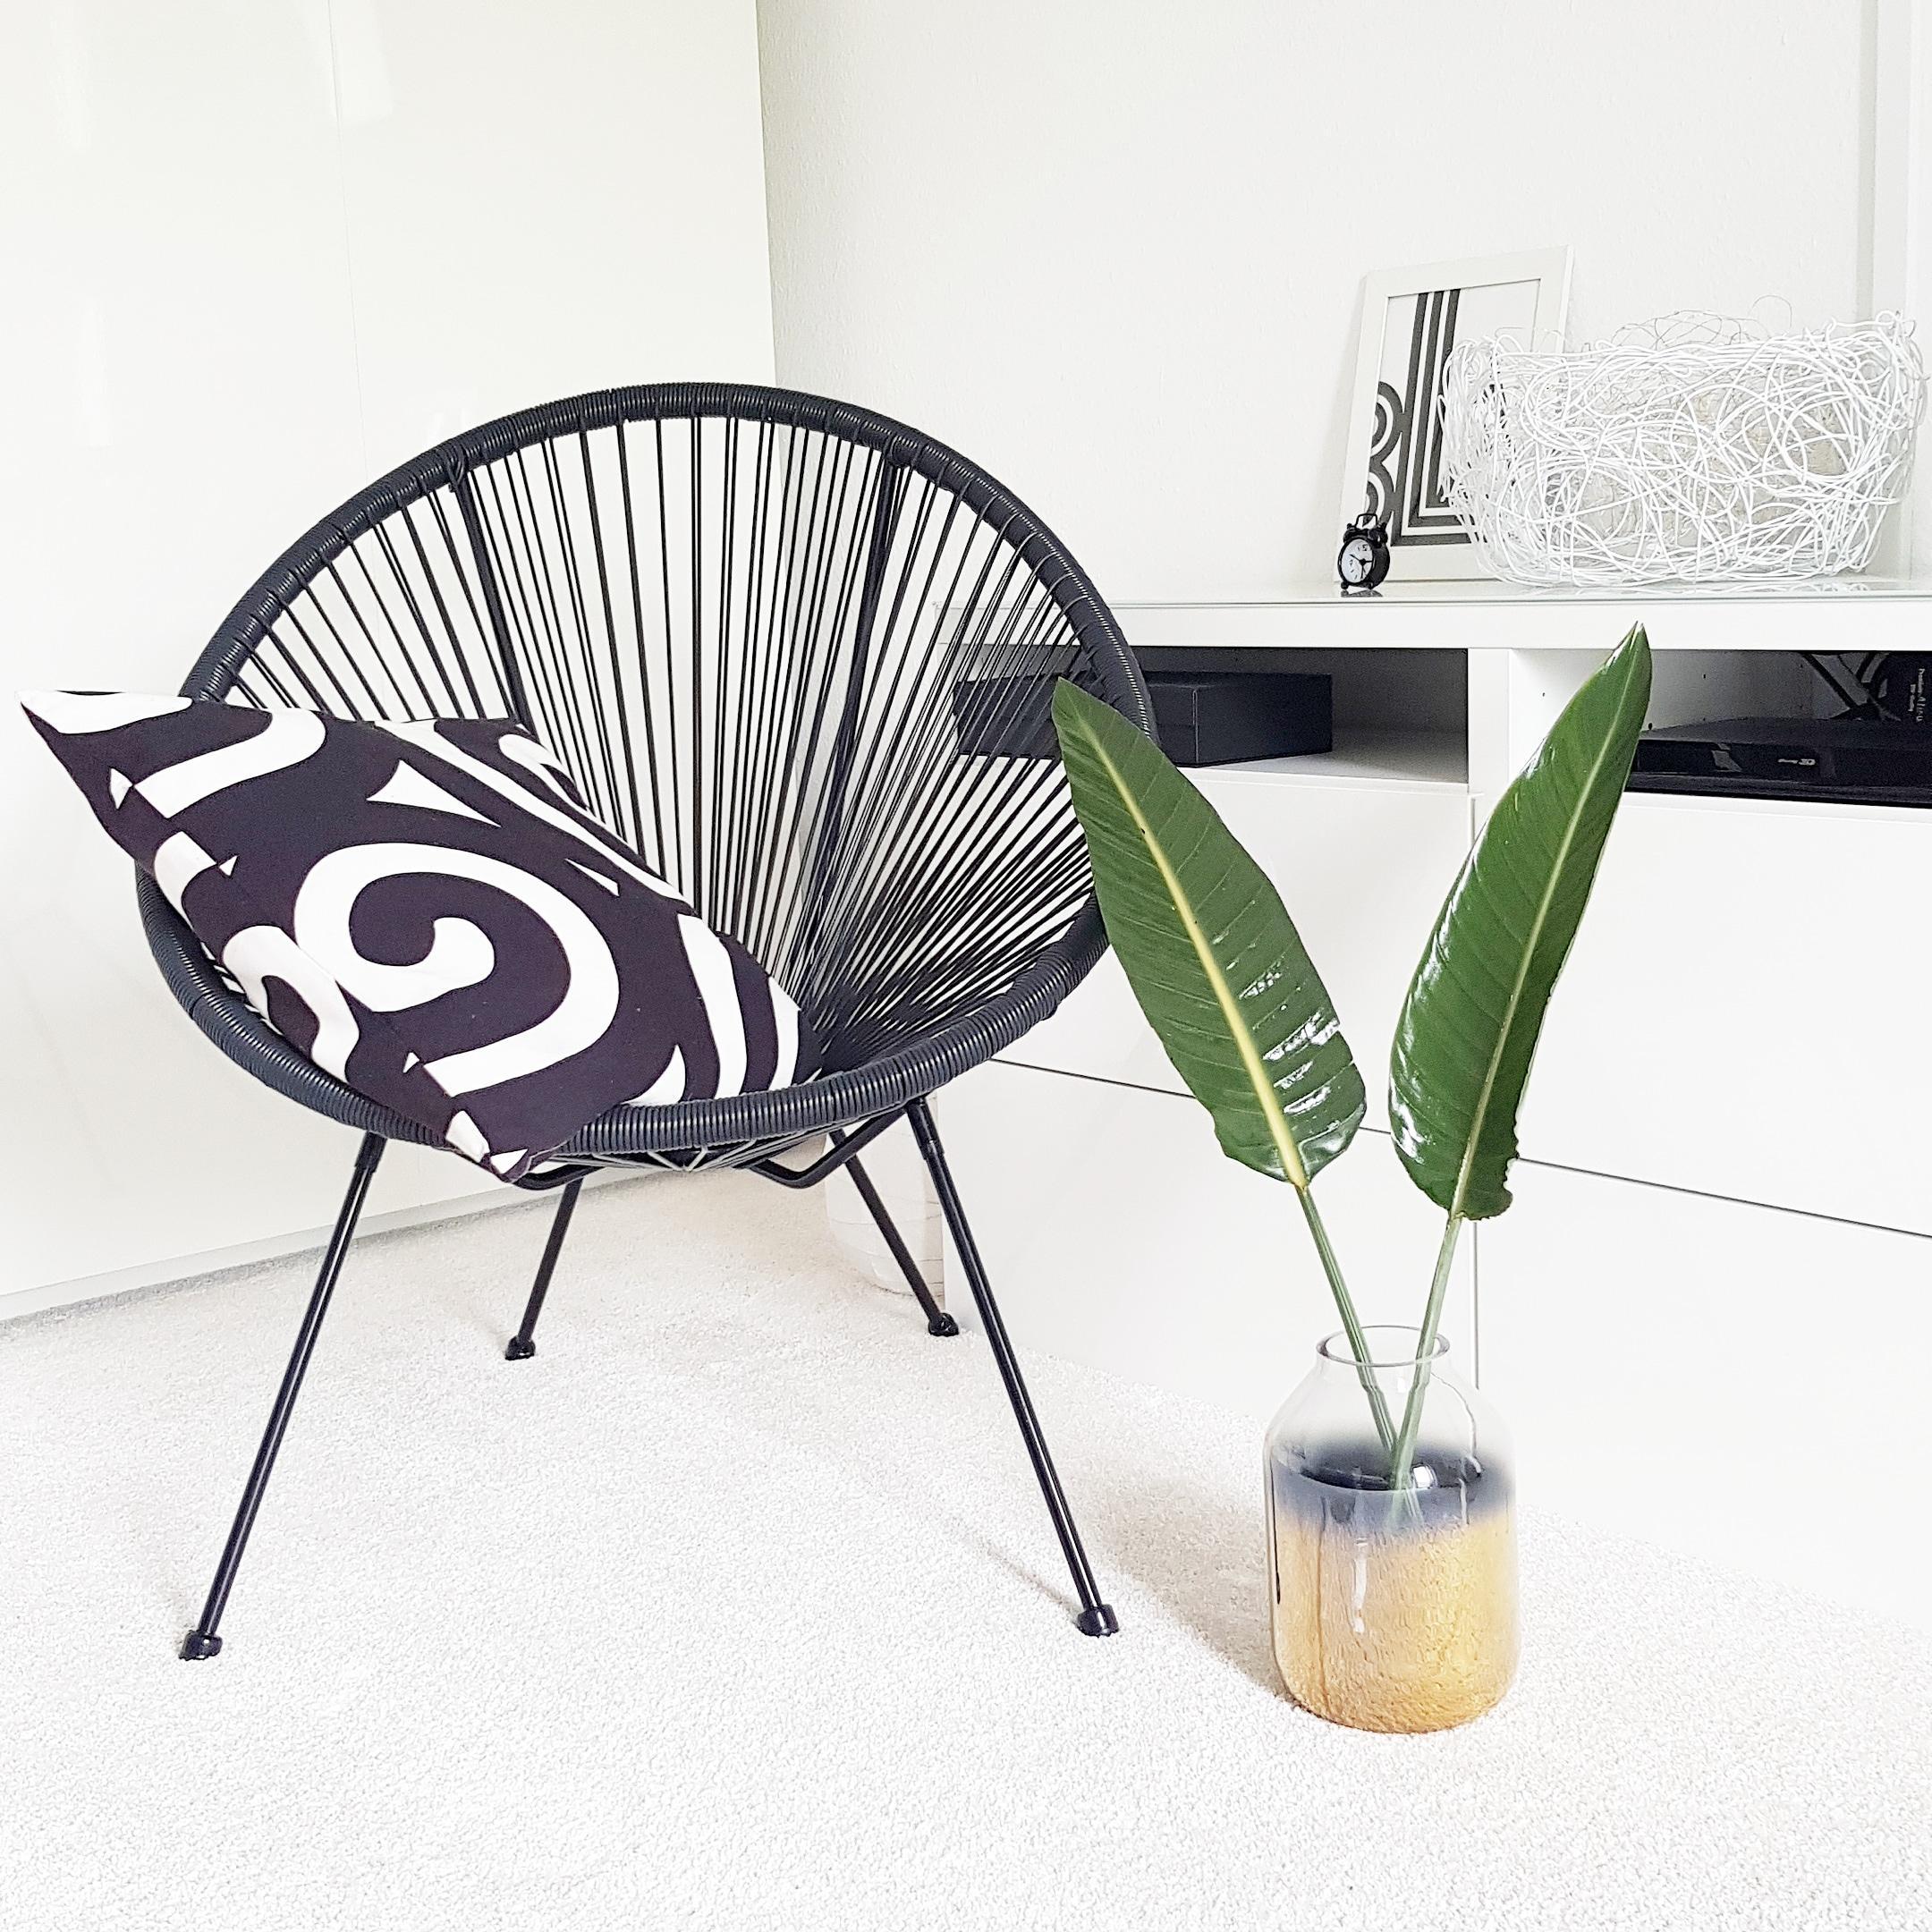 Ich bin  ganz verliebt in diesen Stuhl. 

#scandic #nordic #chair #minimalism #mynordicroom 